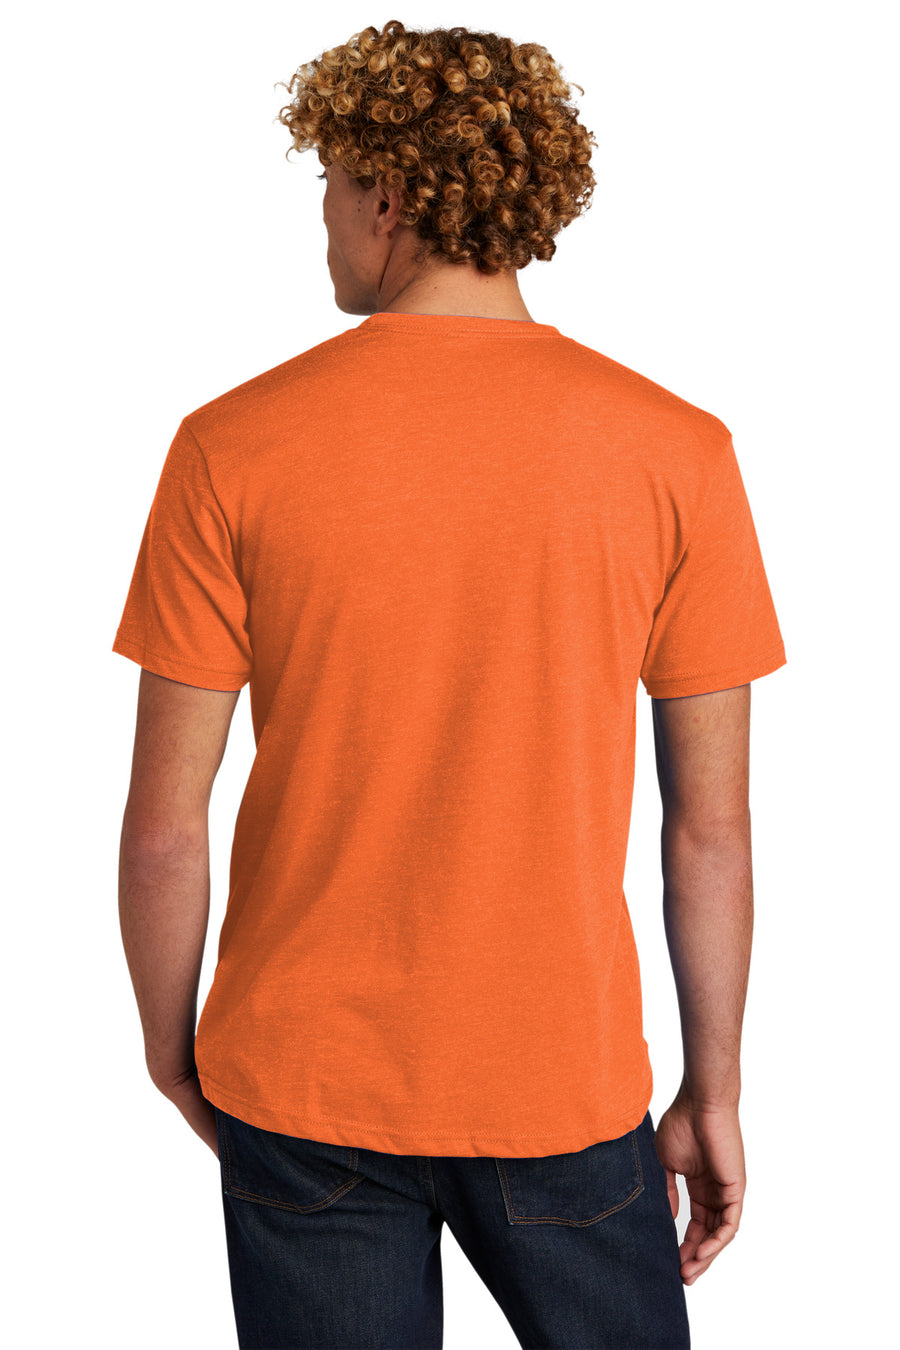 NL6210-Orange-back_model